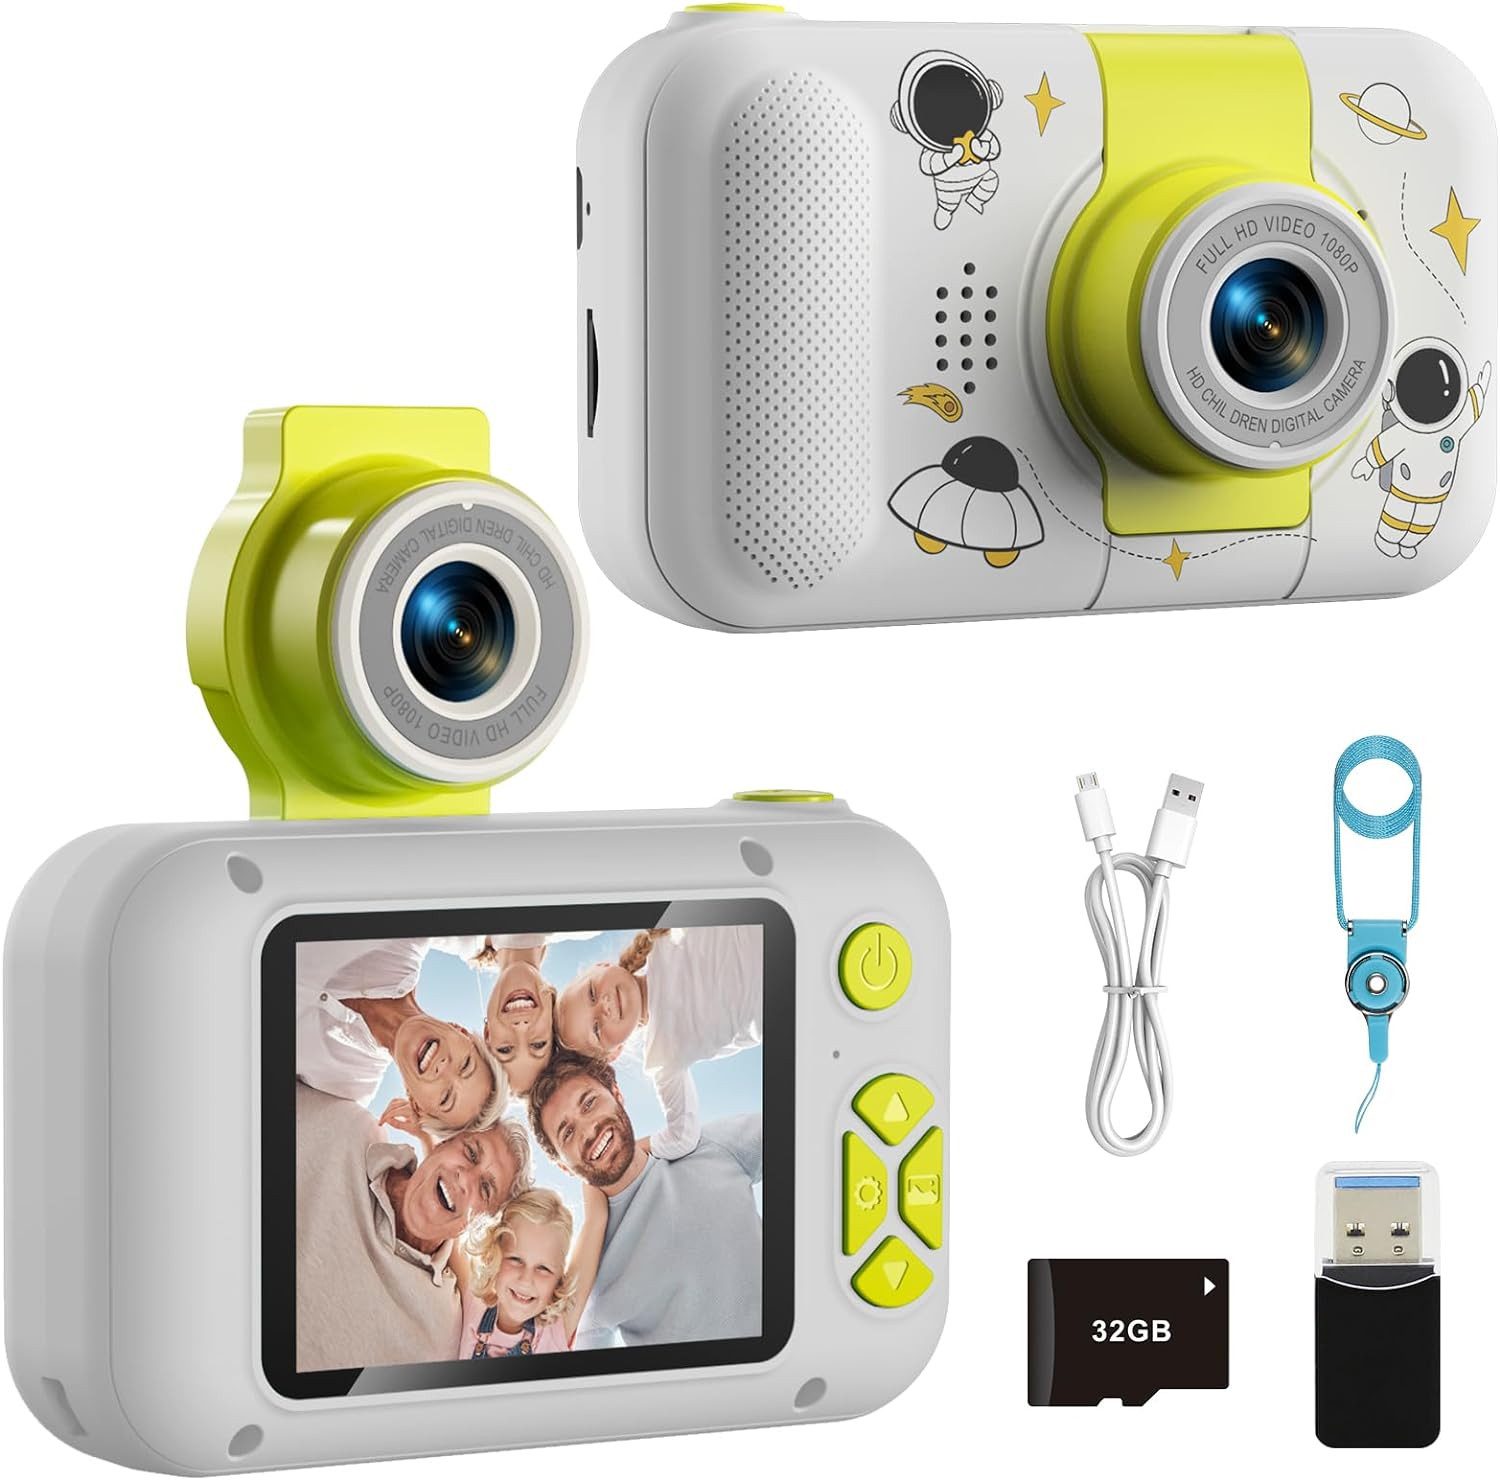 arnssien für Kinder, Video-Selfie Kinderkamera (40 MP, 1x opt. Zoom, mit 32GB TF-Karte Digital Weihnachten Geburtstagsgeschenke)